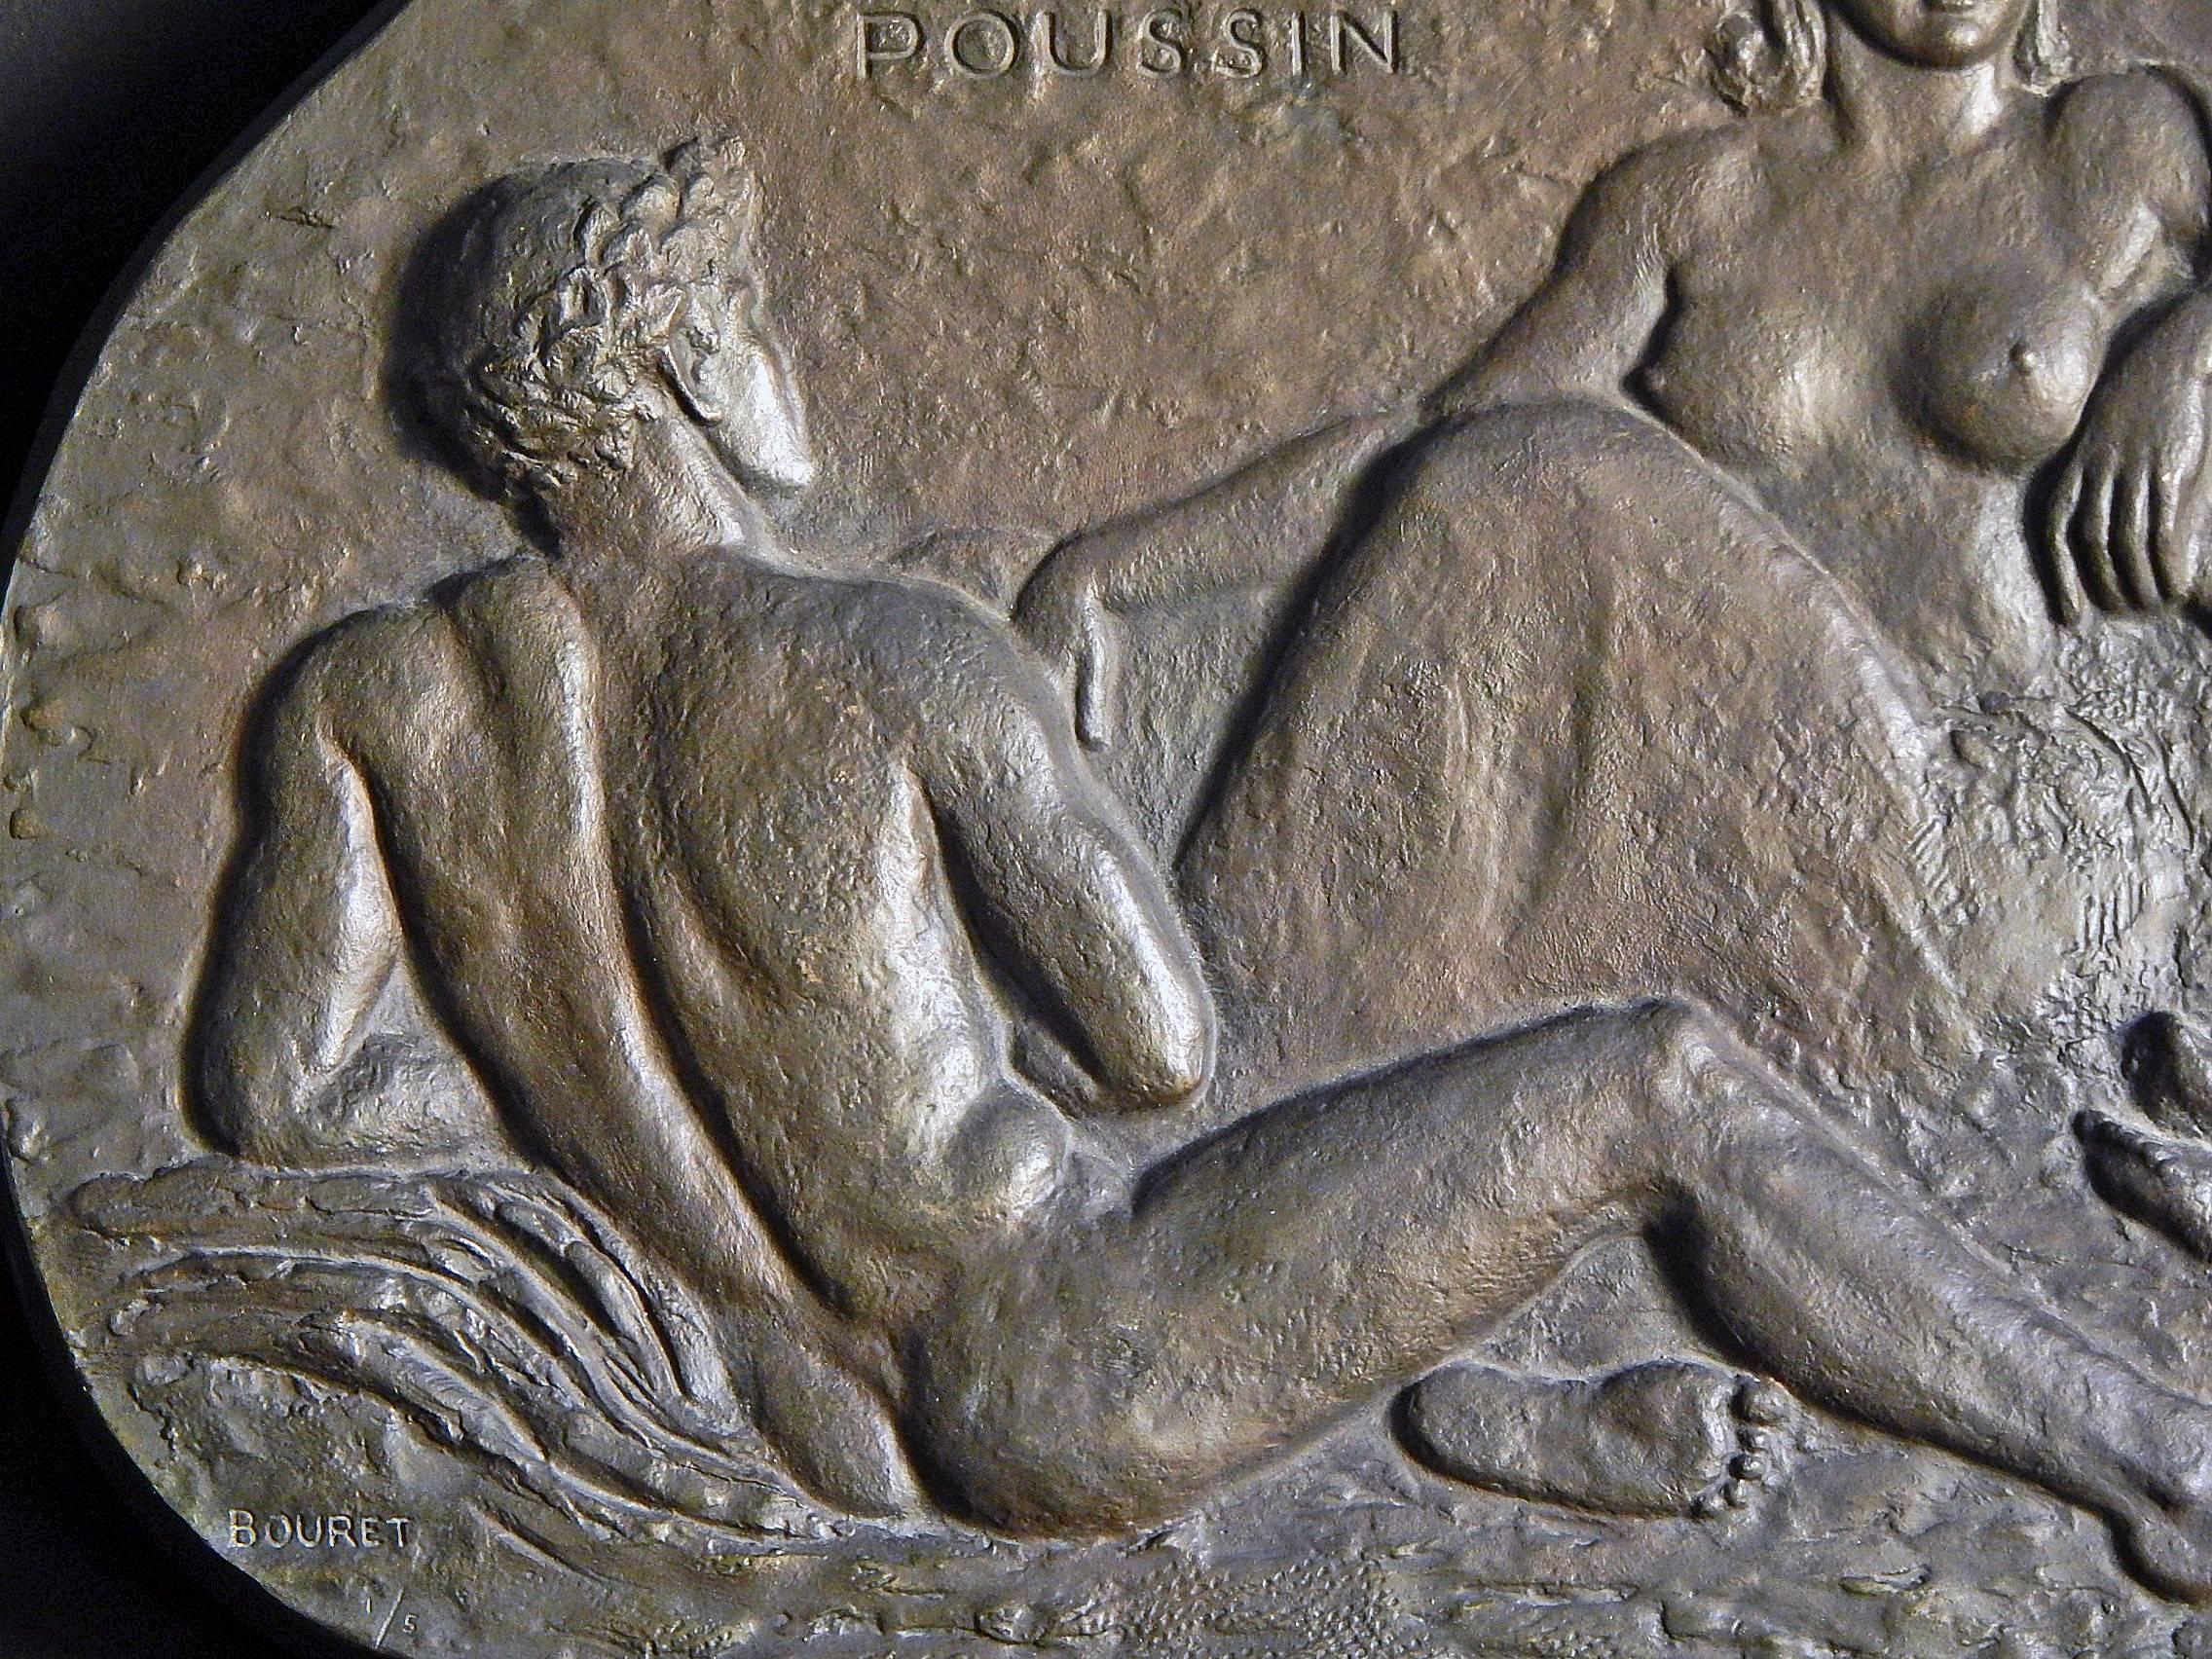 Rare et magnifique panneau de bronze, cette sculpture en bas-relief a été créée par Pierre Bouret en l'honneur de Nicolas Poussin. Les multiples nus masculins et féminins dans un cadre bucolique sont clairement inspirés de certains tableaux